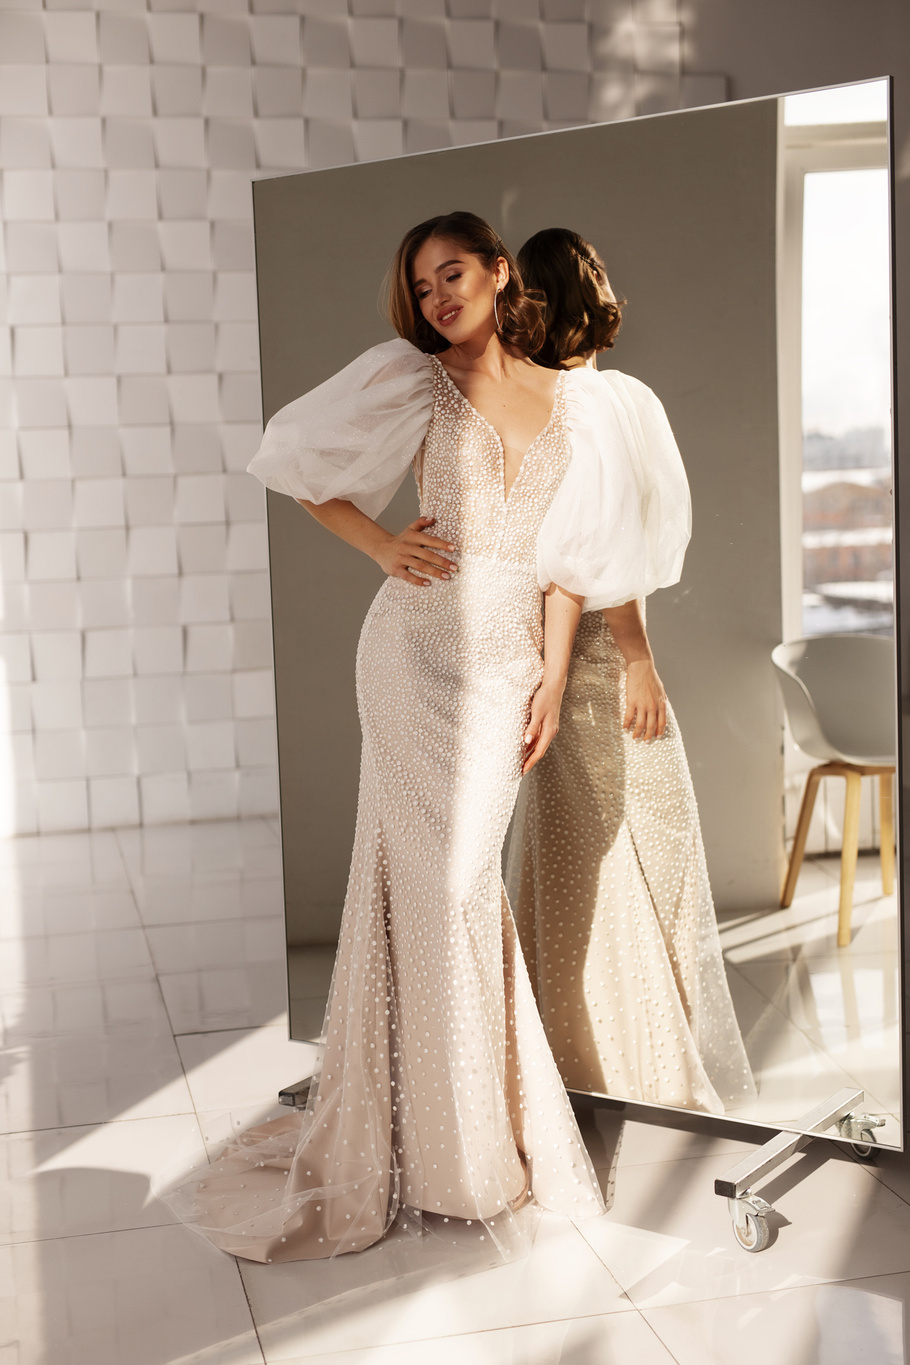 Купить свадебное платье «Имперо» Анна Кузнецова из коллекции Спосами 2021 года в салоне «Мэри Трюфель»